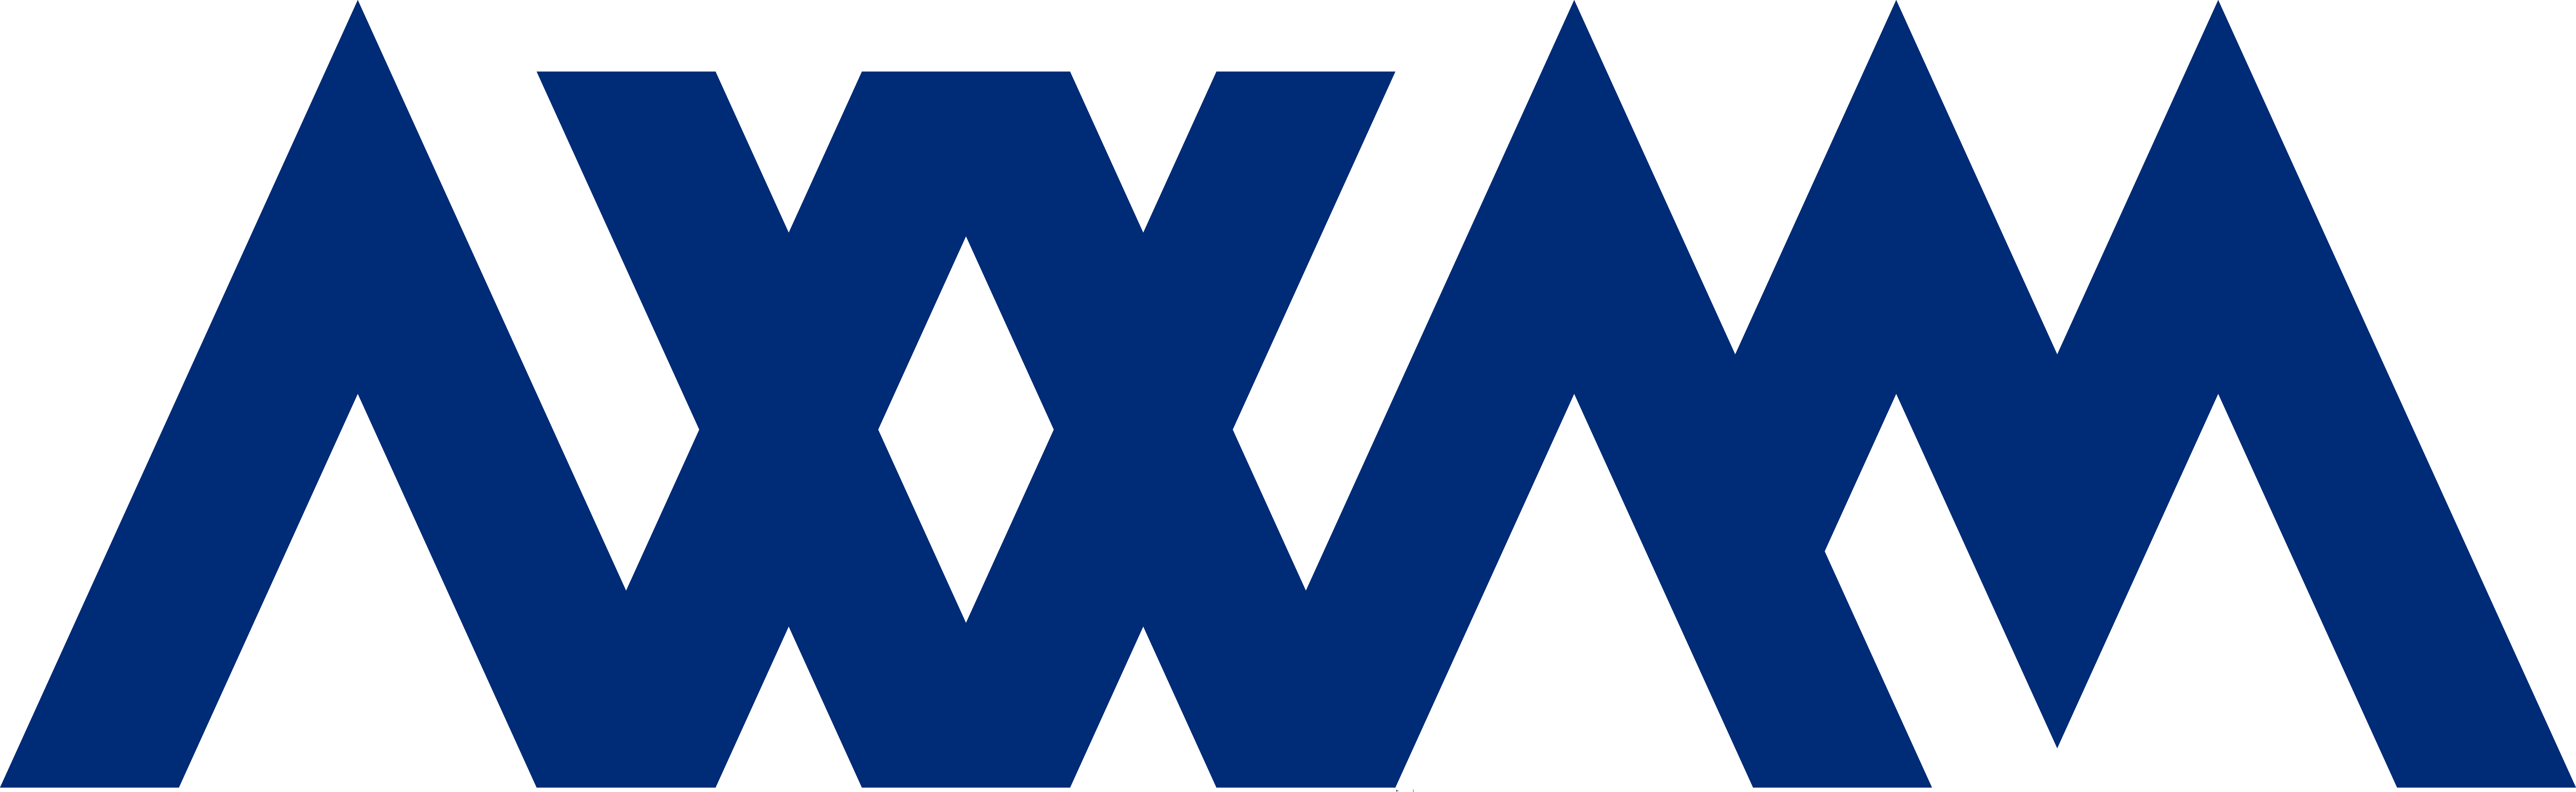 Logo Axxam blue_RGB